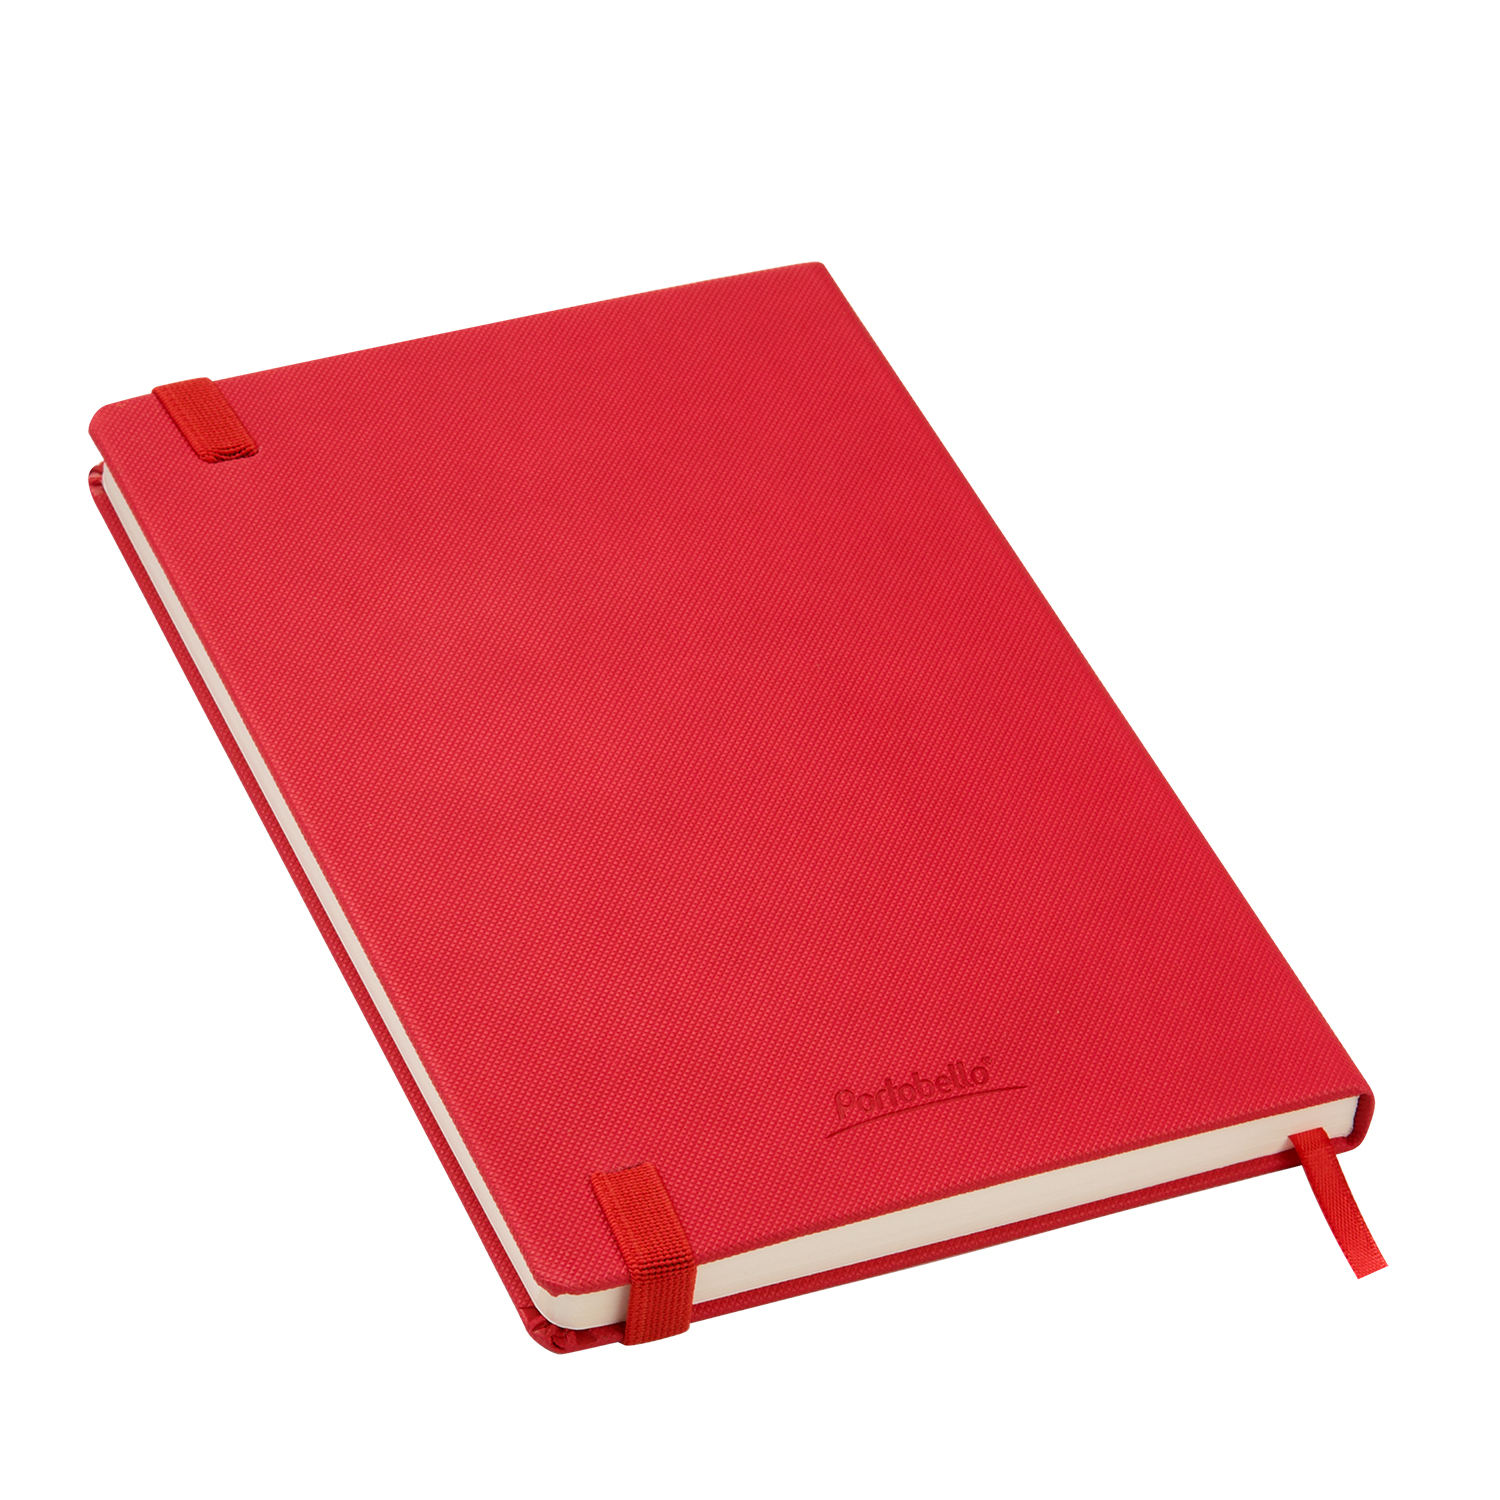 Ежедневник Canyon Btobook недатированный, красный (без упаковки, без стикера)